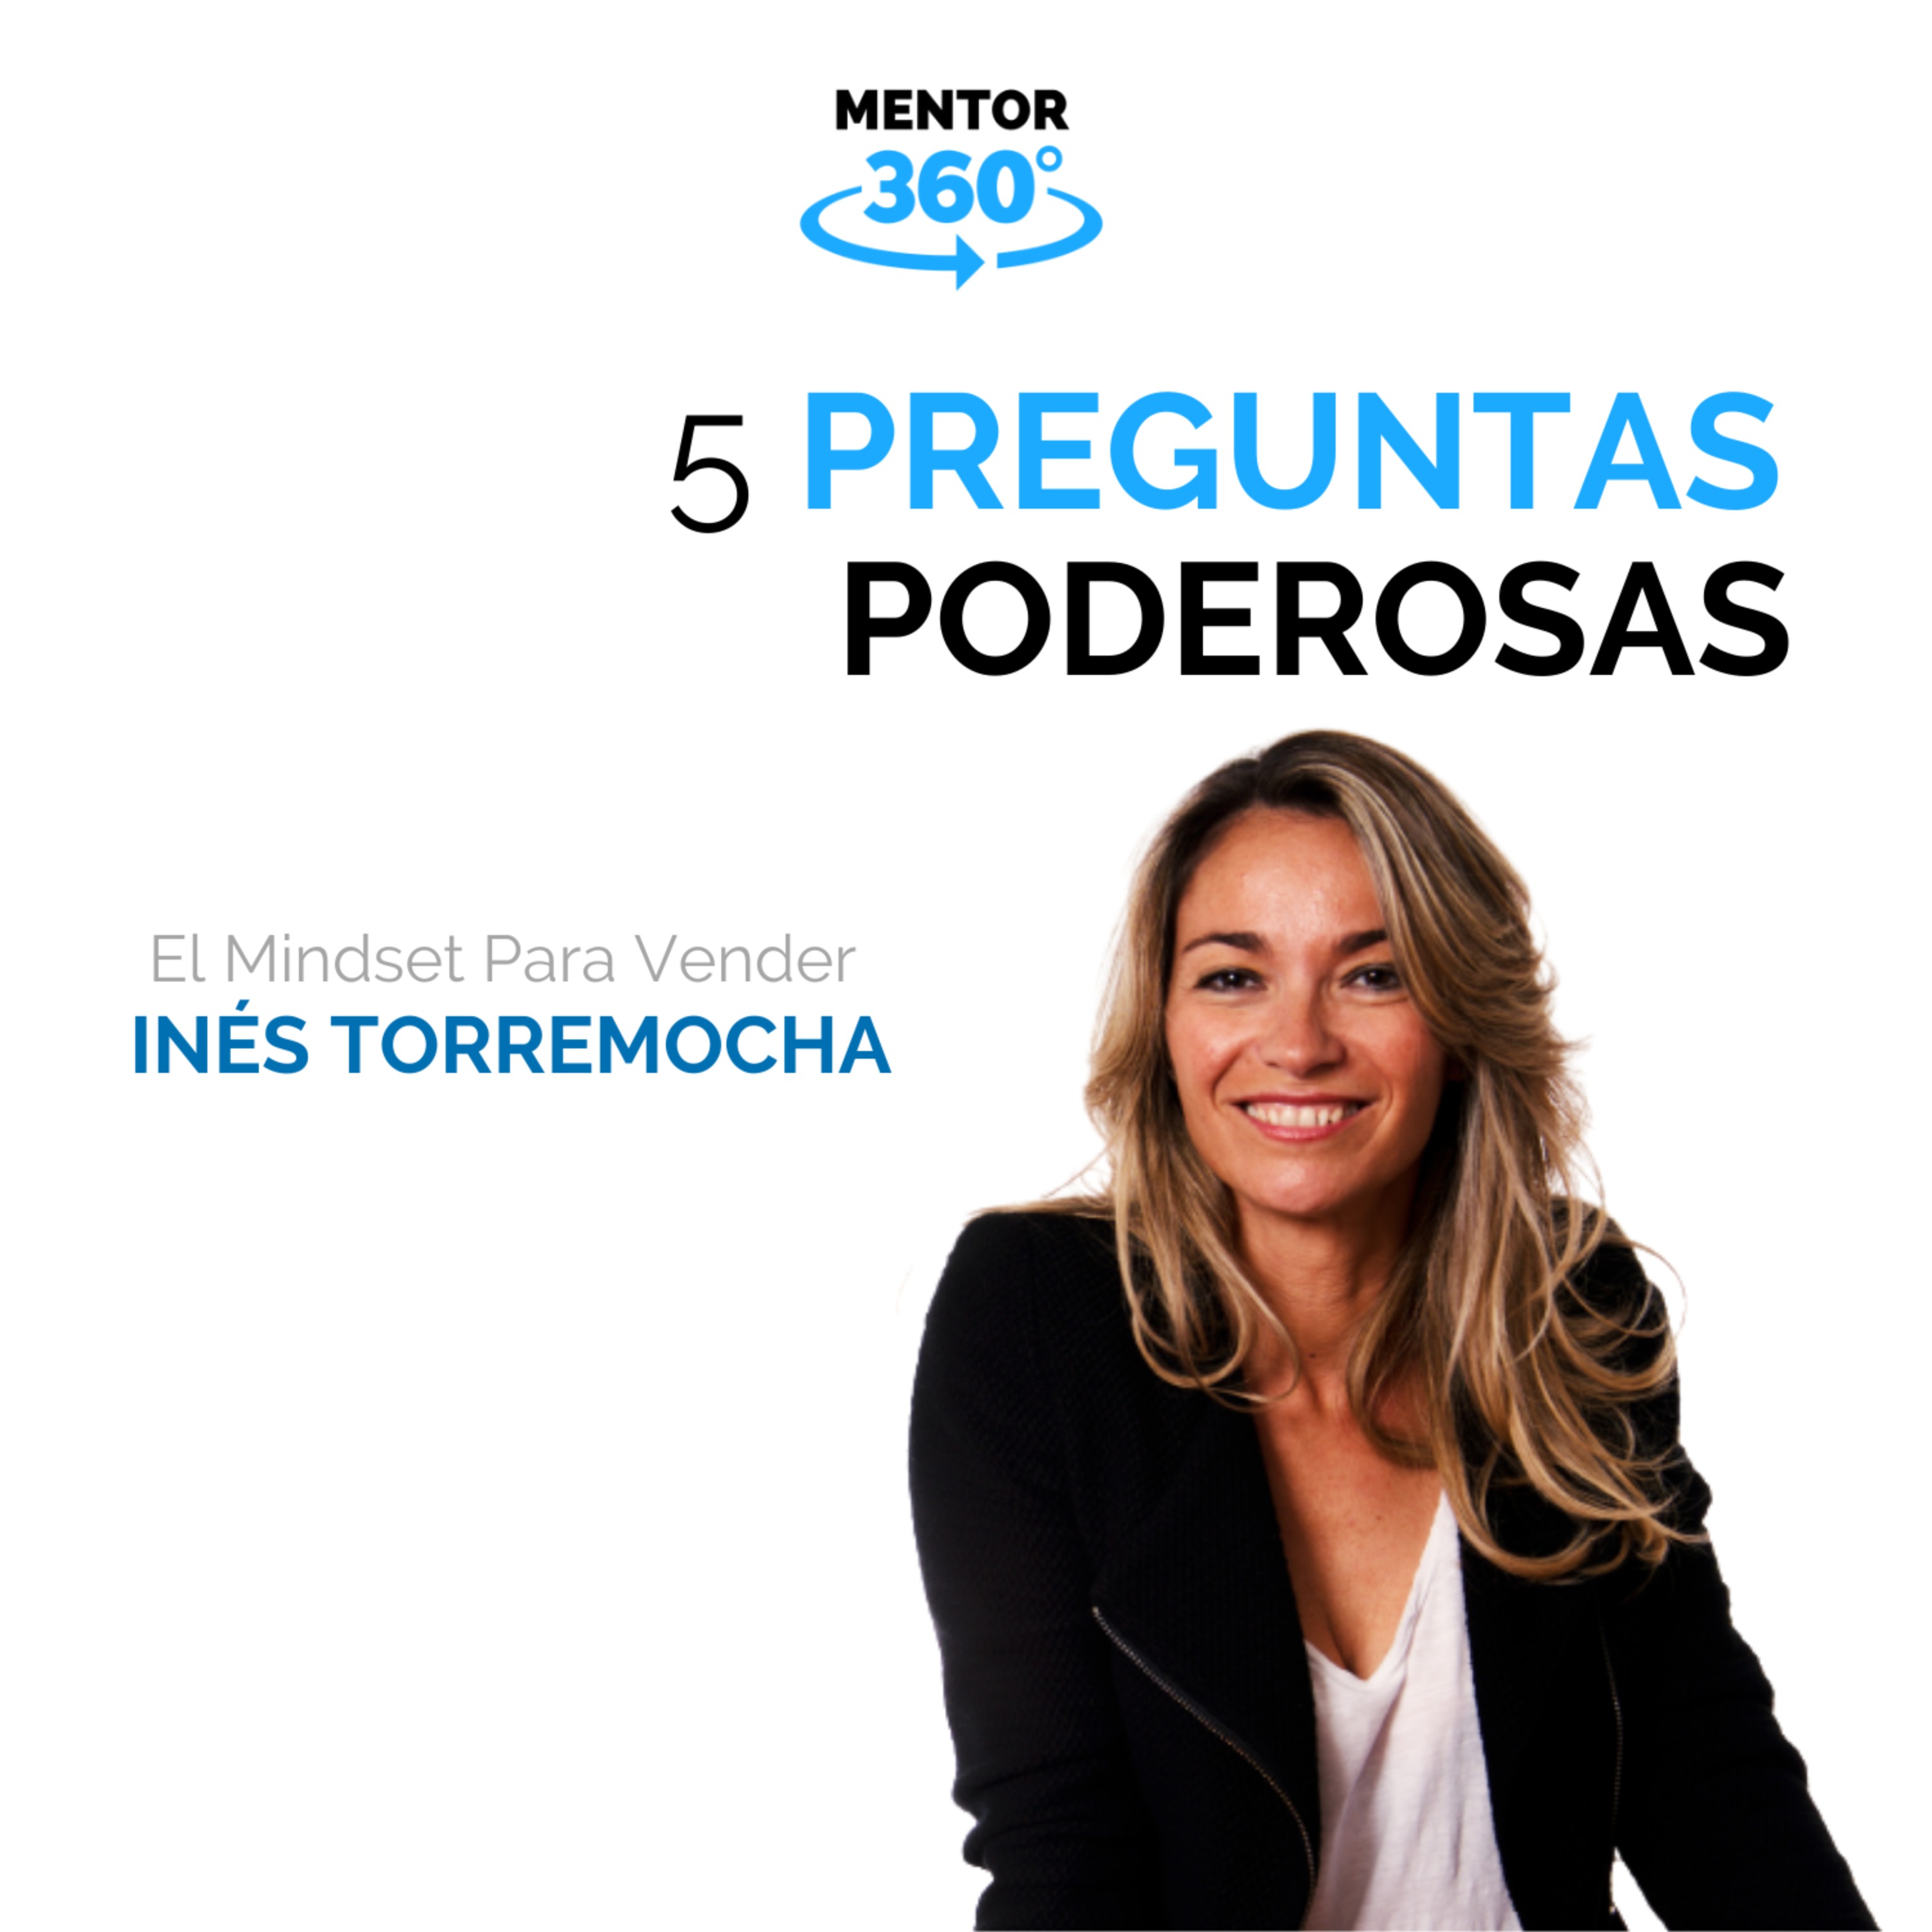 5 Preguntas Poderosas - El Mindset Para Vender - Inés Torremocha - MENTOR360